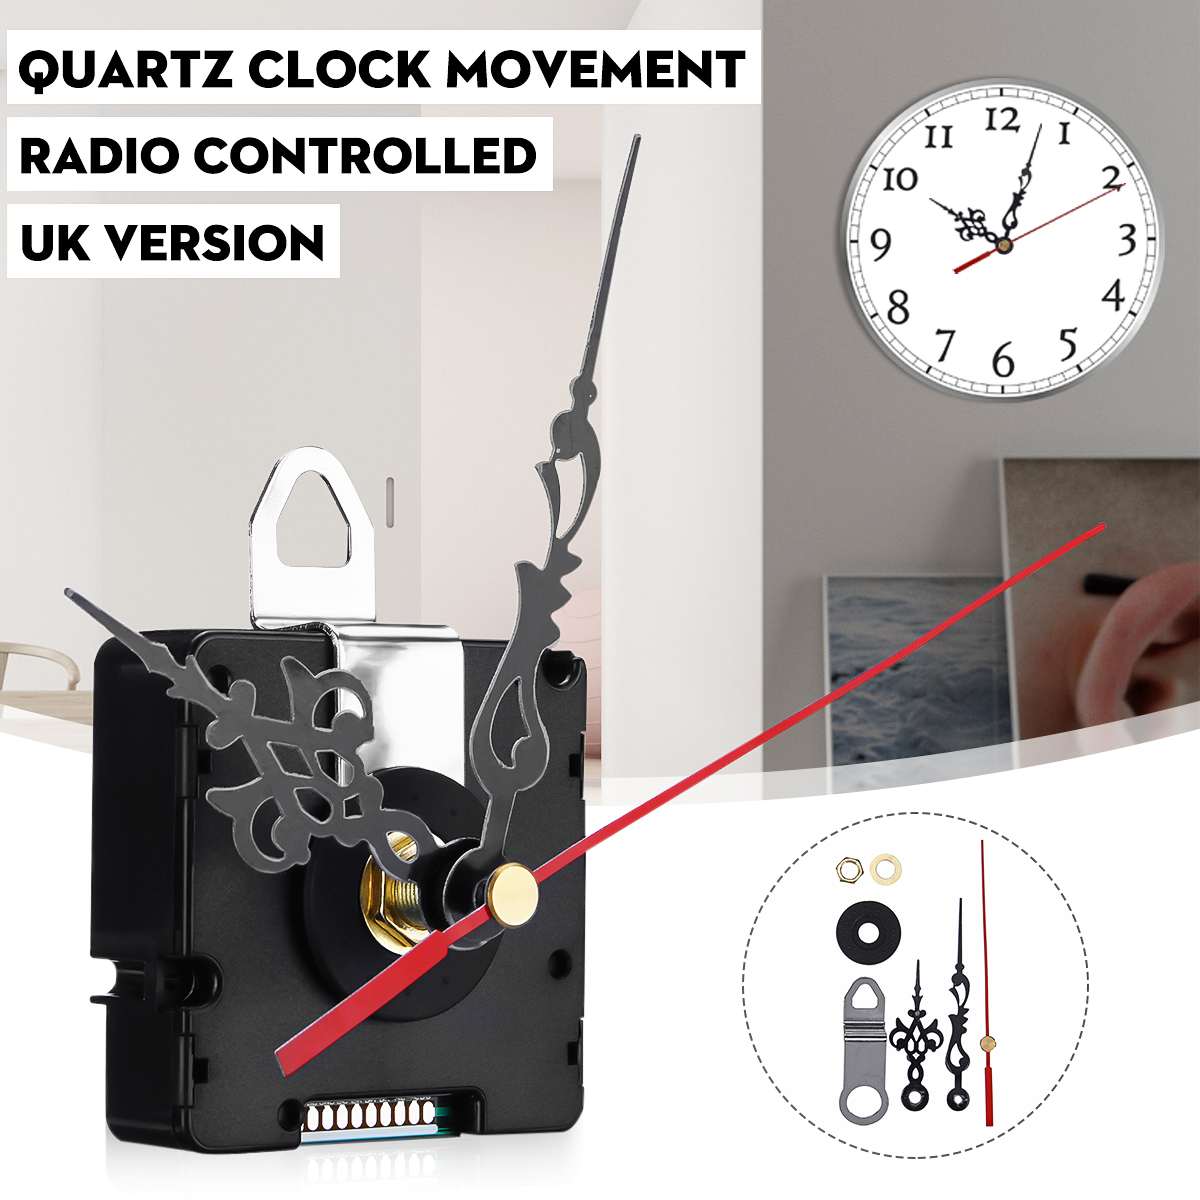 Atomic Radio Controlled Quartz Silent Clock Movement Mechanism DIY Kit Voor UK AZG Signaal Handen Accessoires